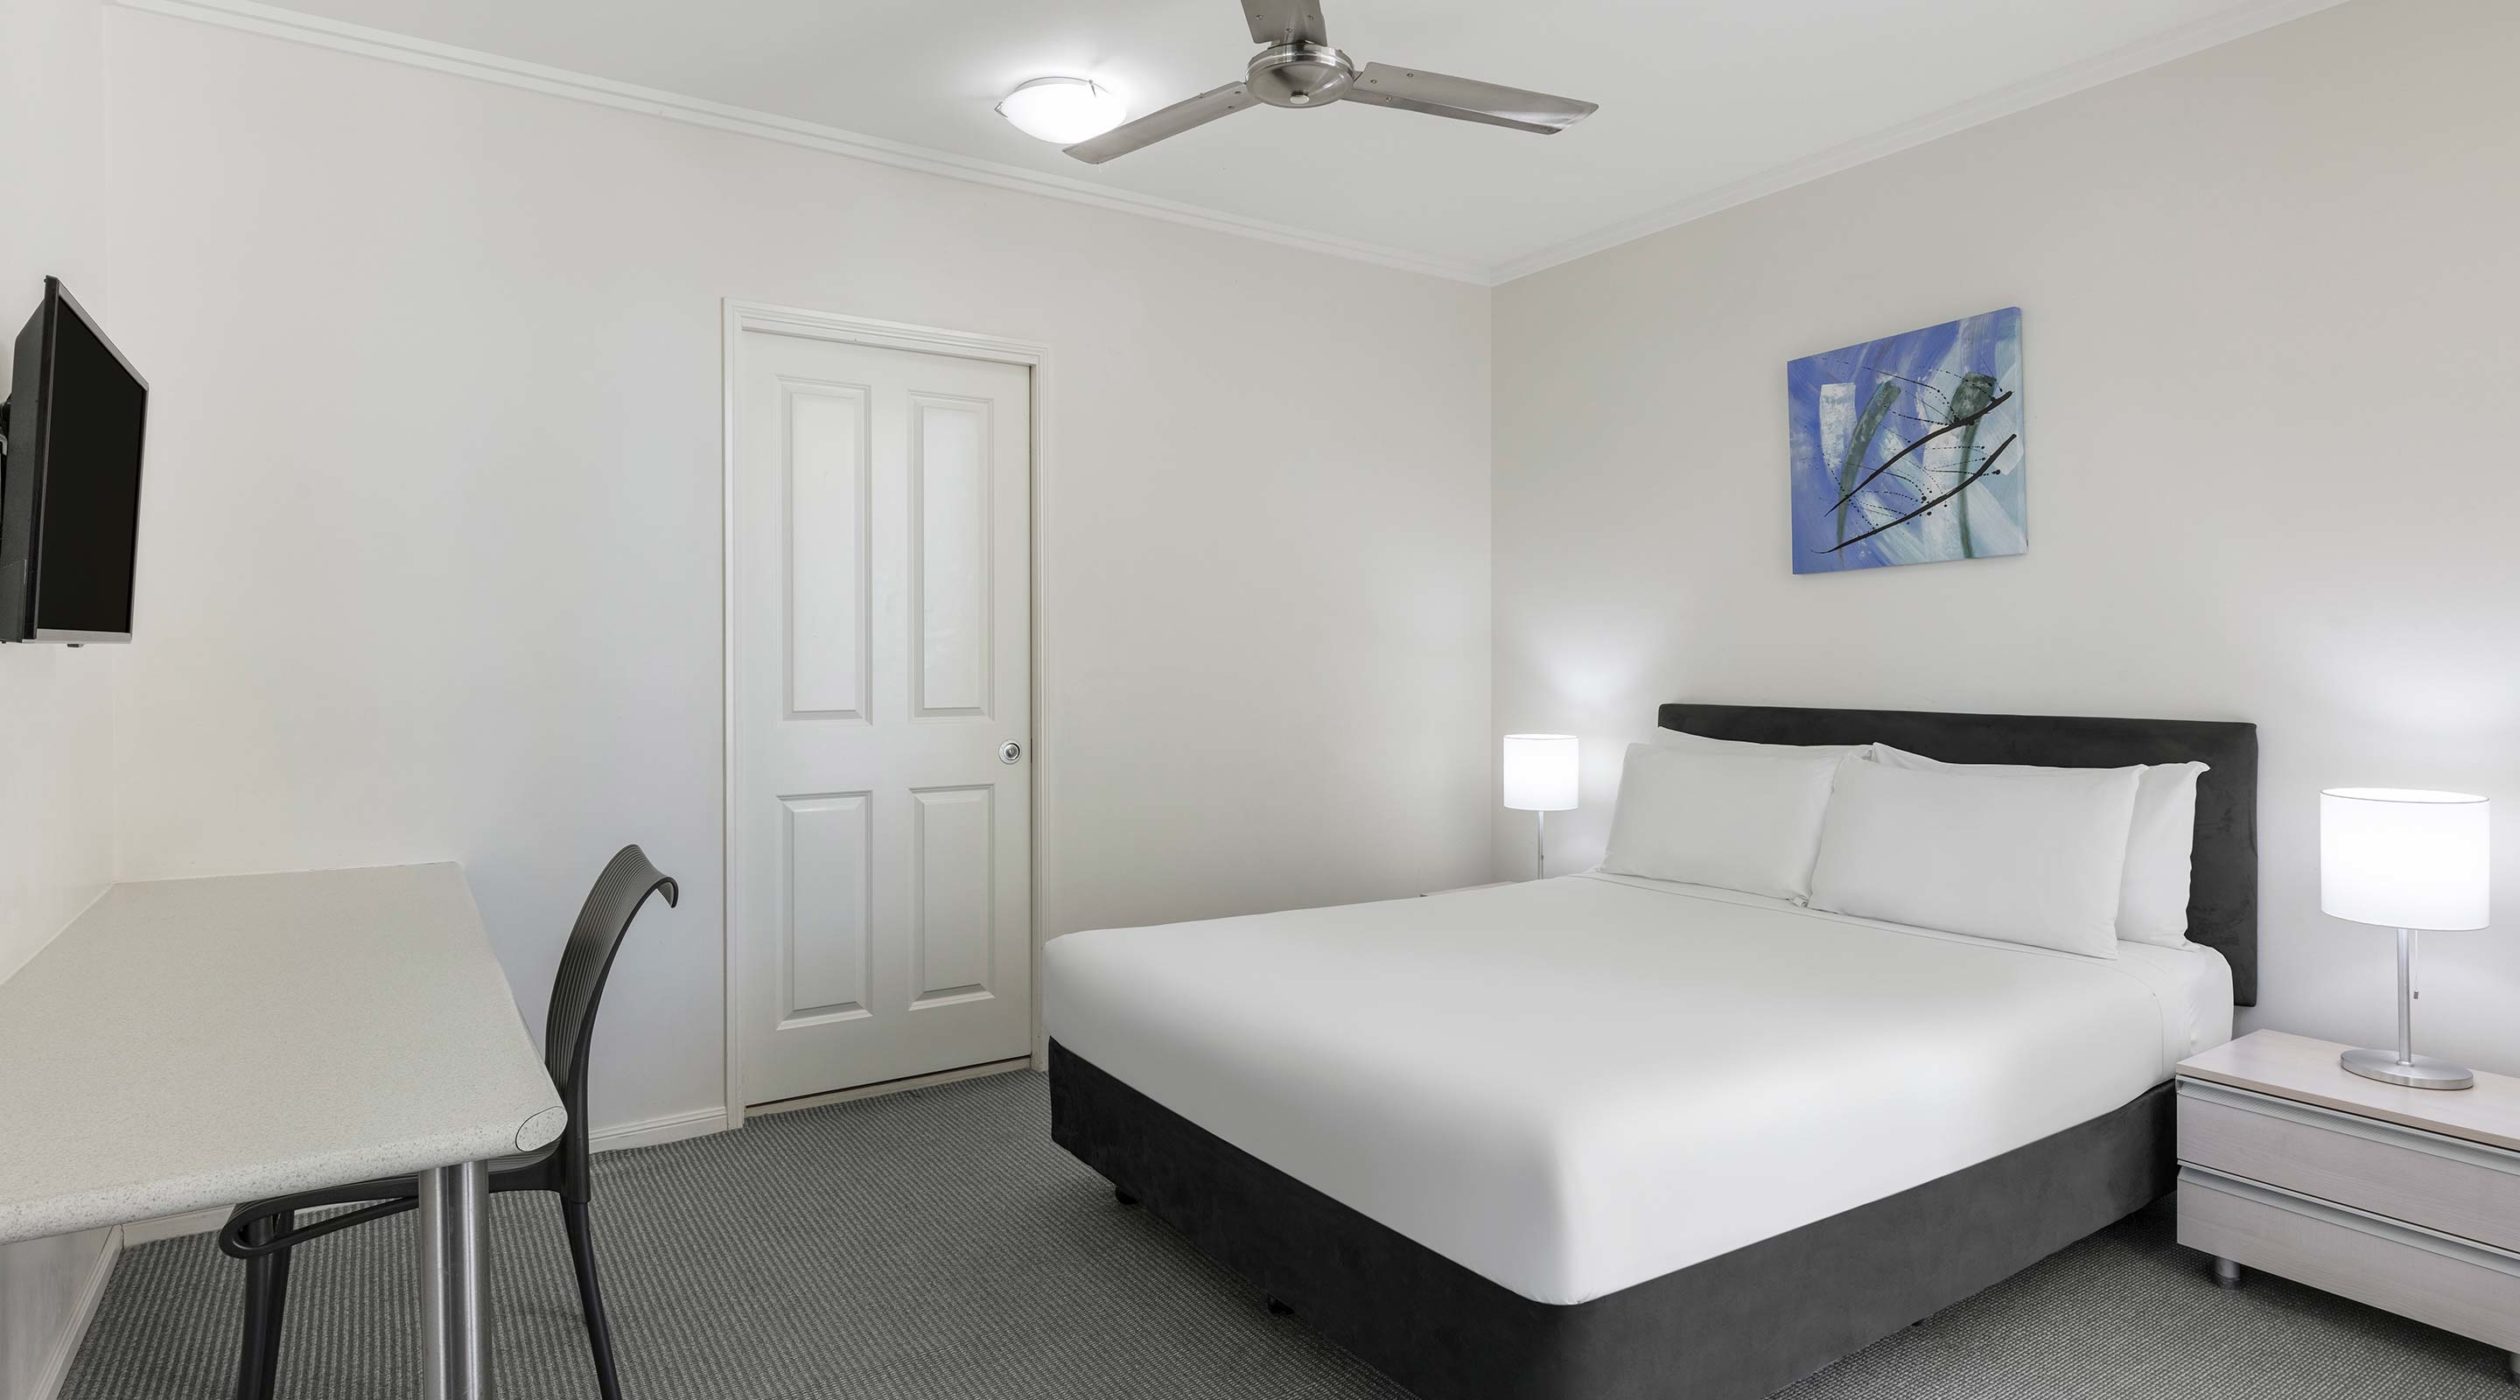 Standard Hotel Room Queen Bed